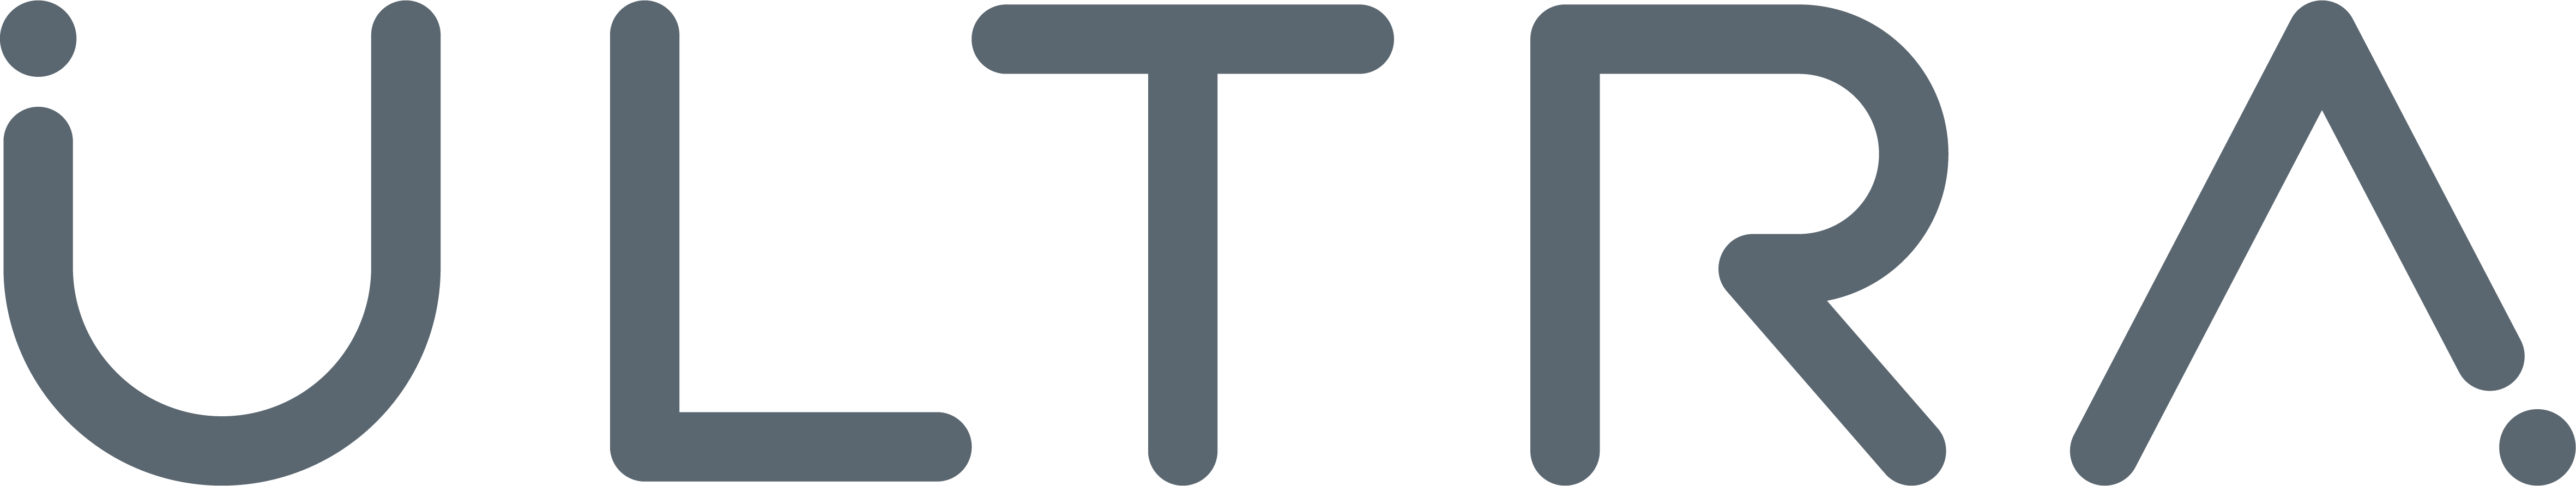 Ultra_Grey_logo